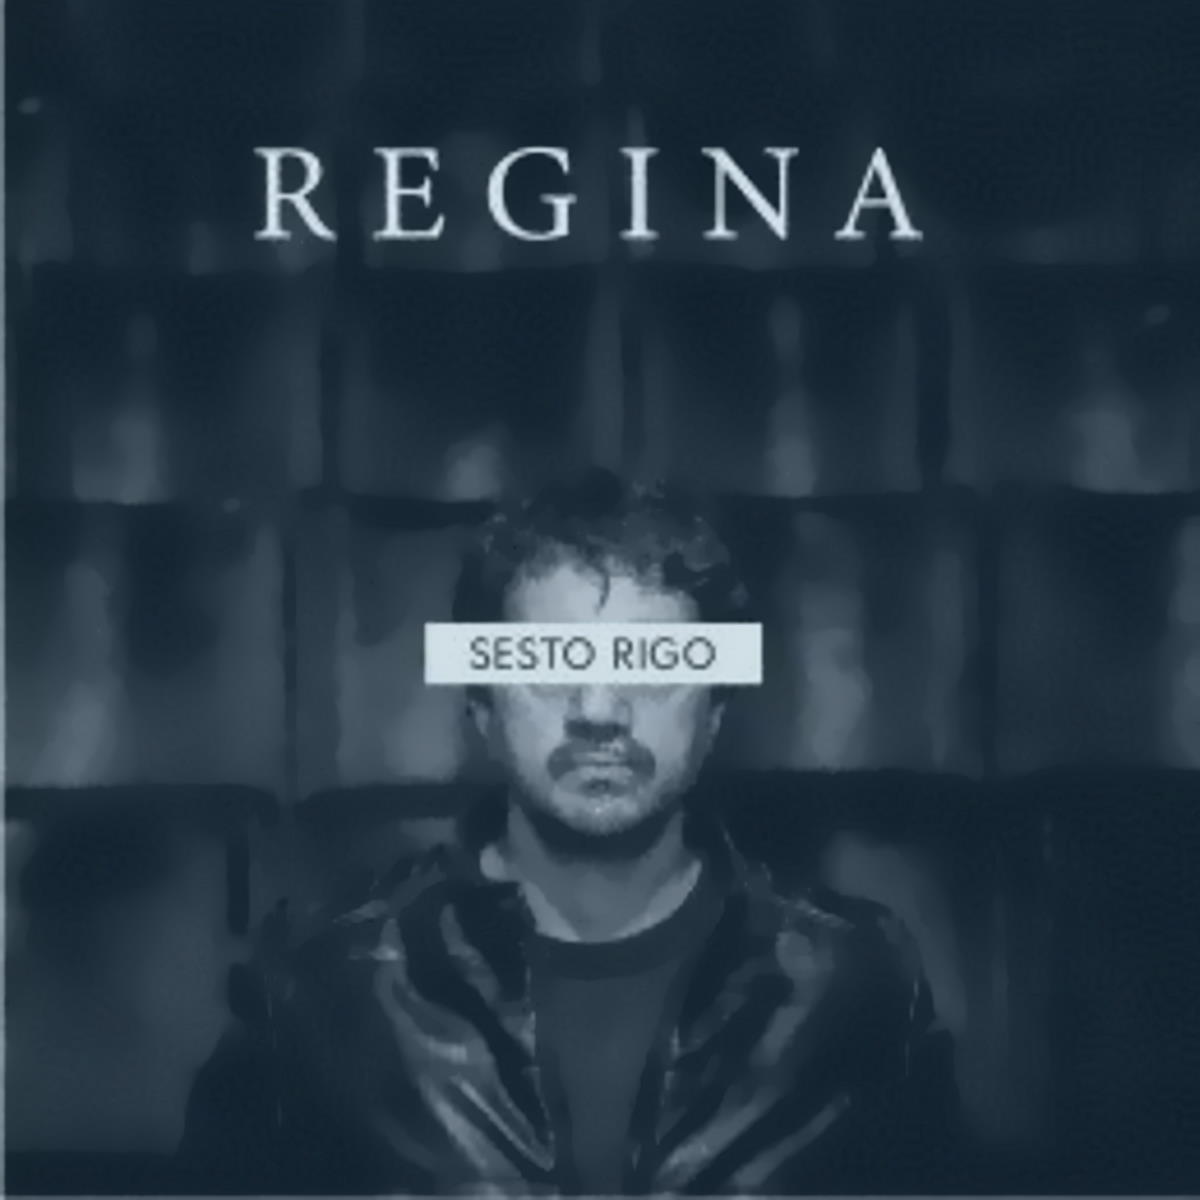 SESTO RIGO “Regina” è l’esordio solista dopo 30 anni di musica nelle rock band